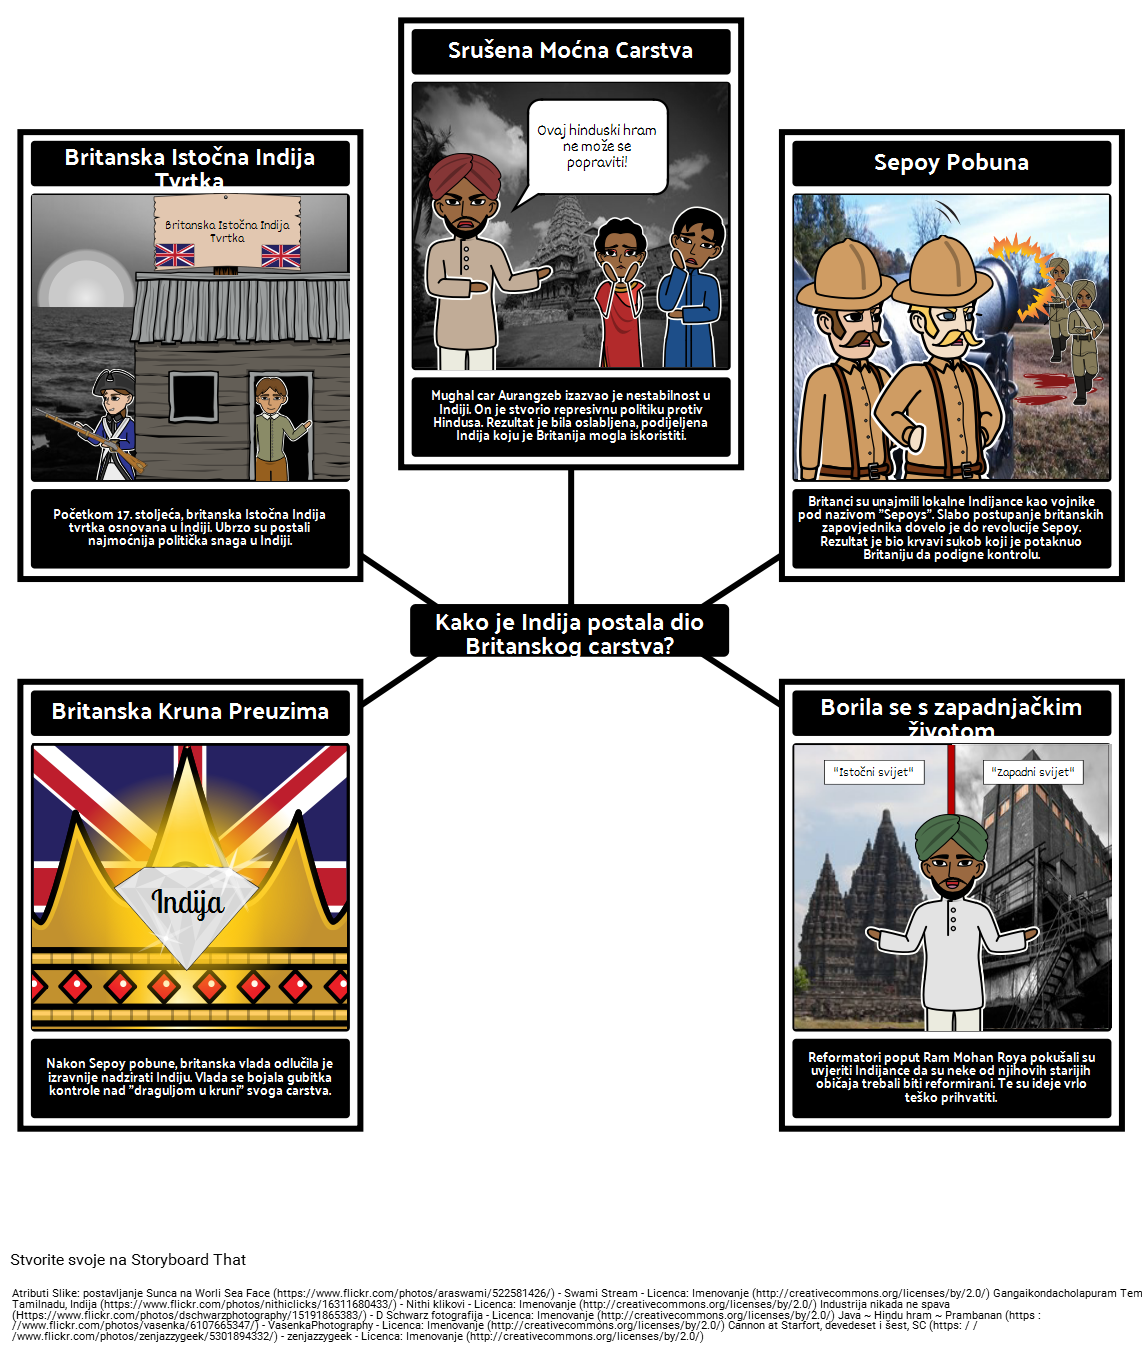 Povijest Imperijalizma - Uključivanje Indije u Britansko Carstvo